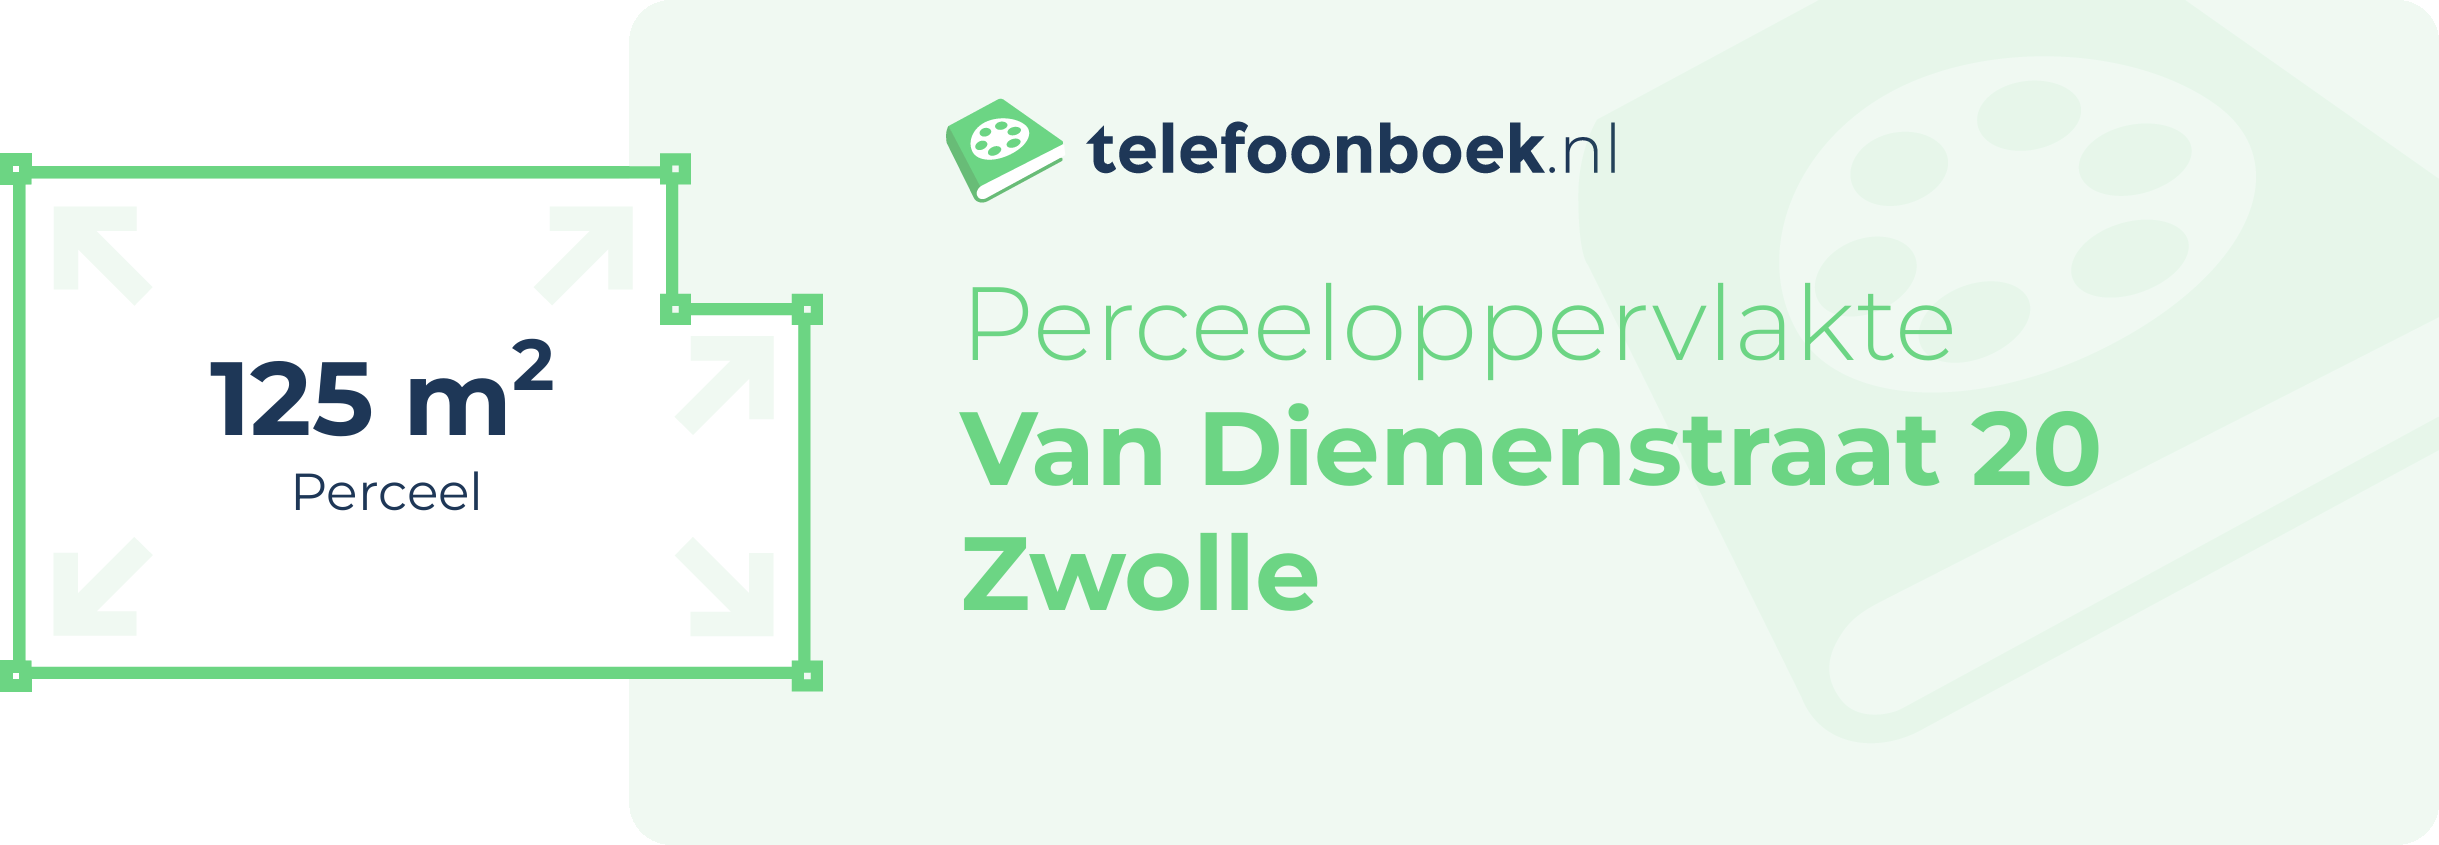 Perceeloppervlakte Van Diemenstraat 20 Zwolle